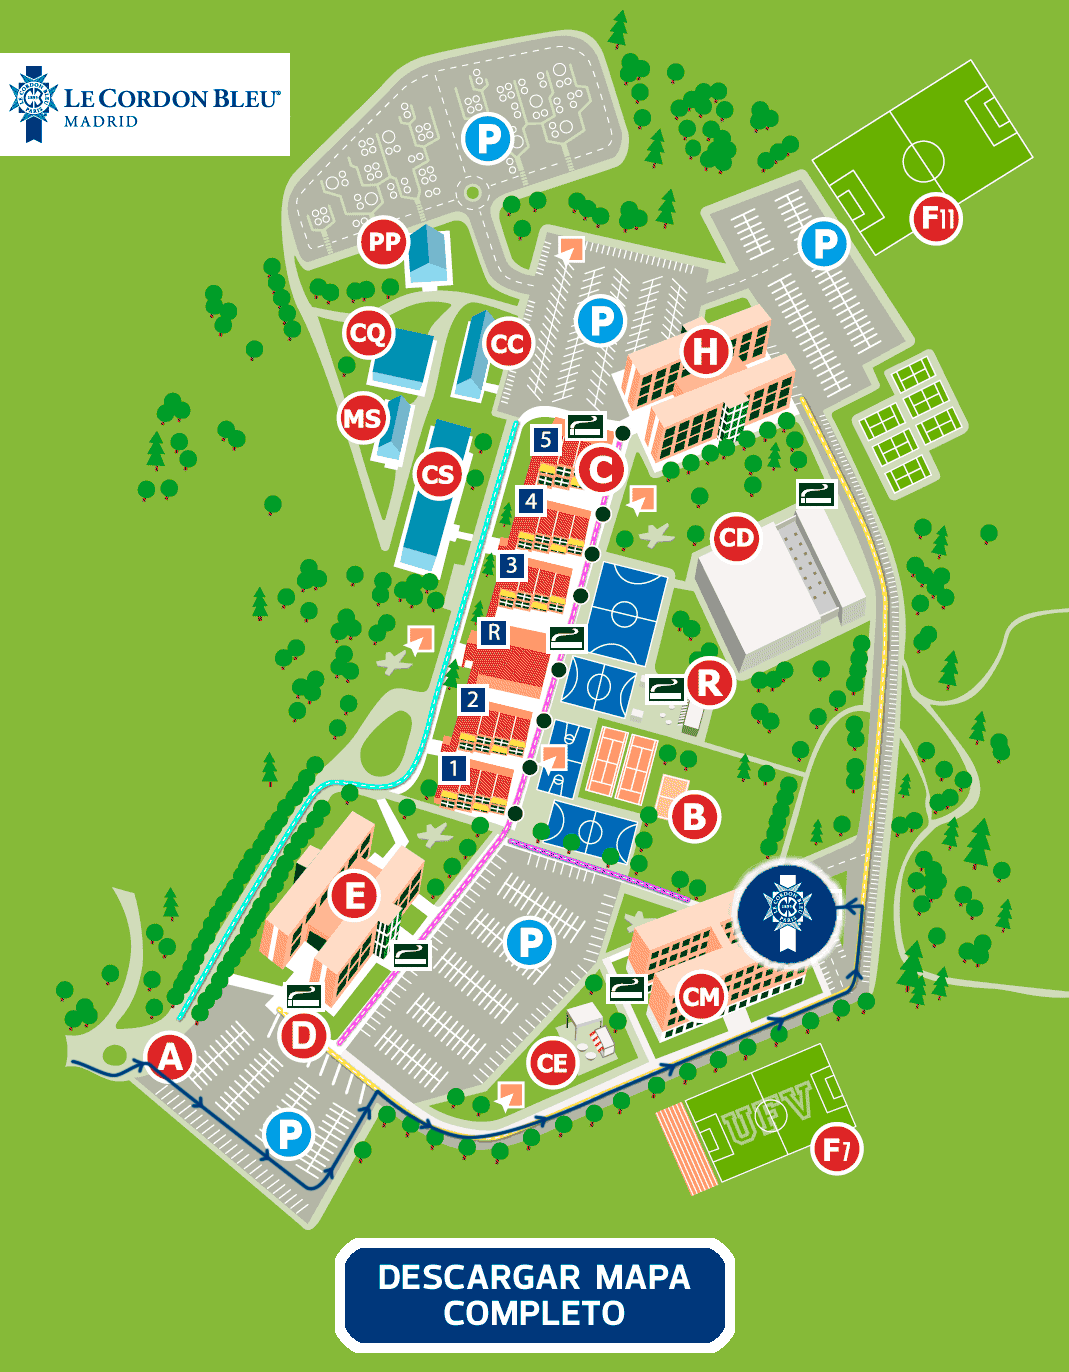 Mapa-campus-LCB-madrid